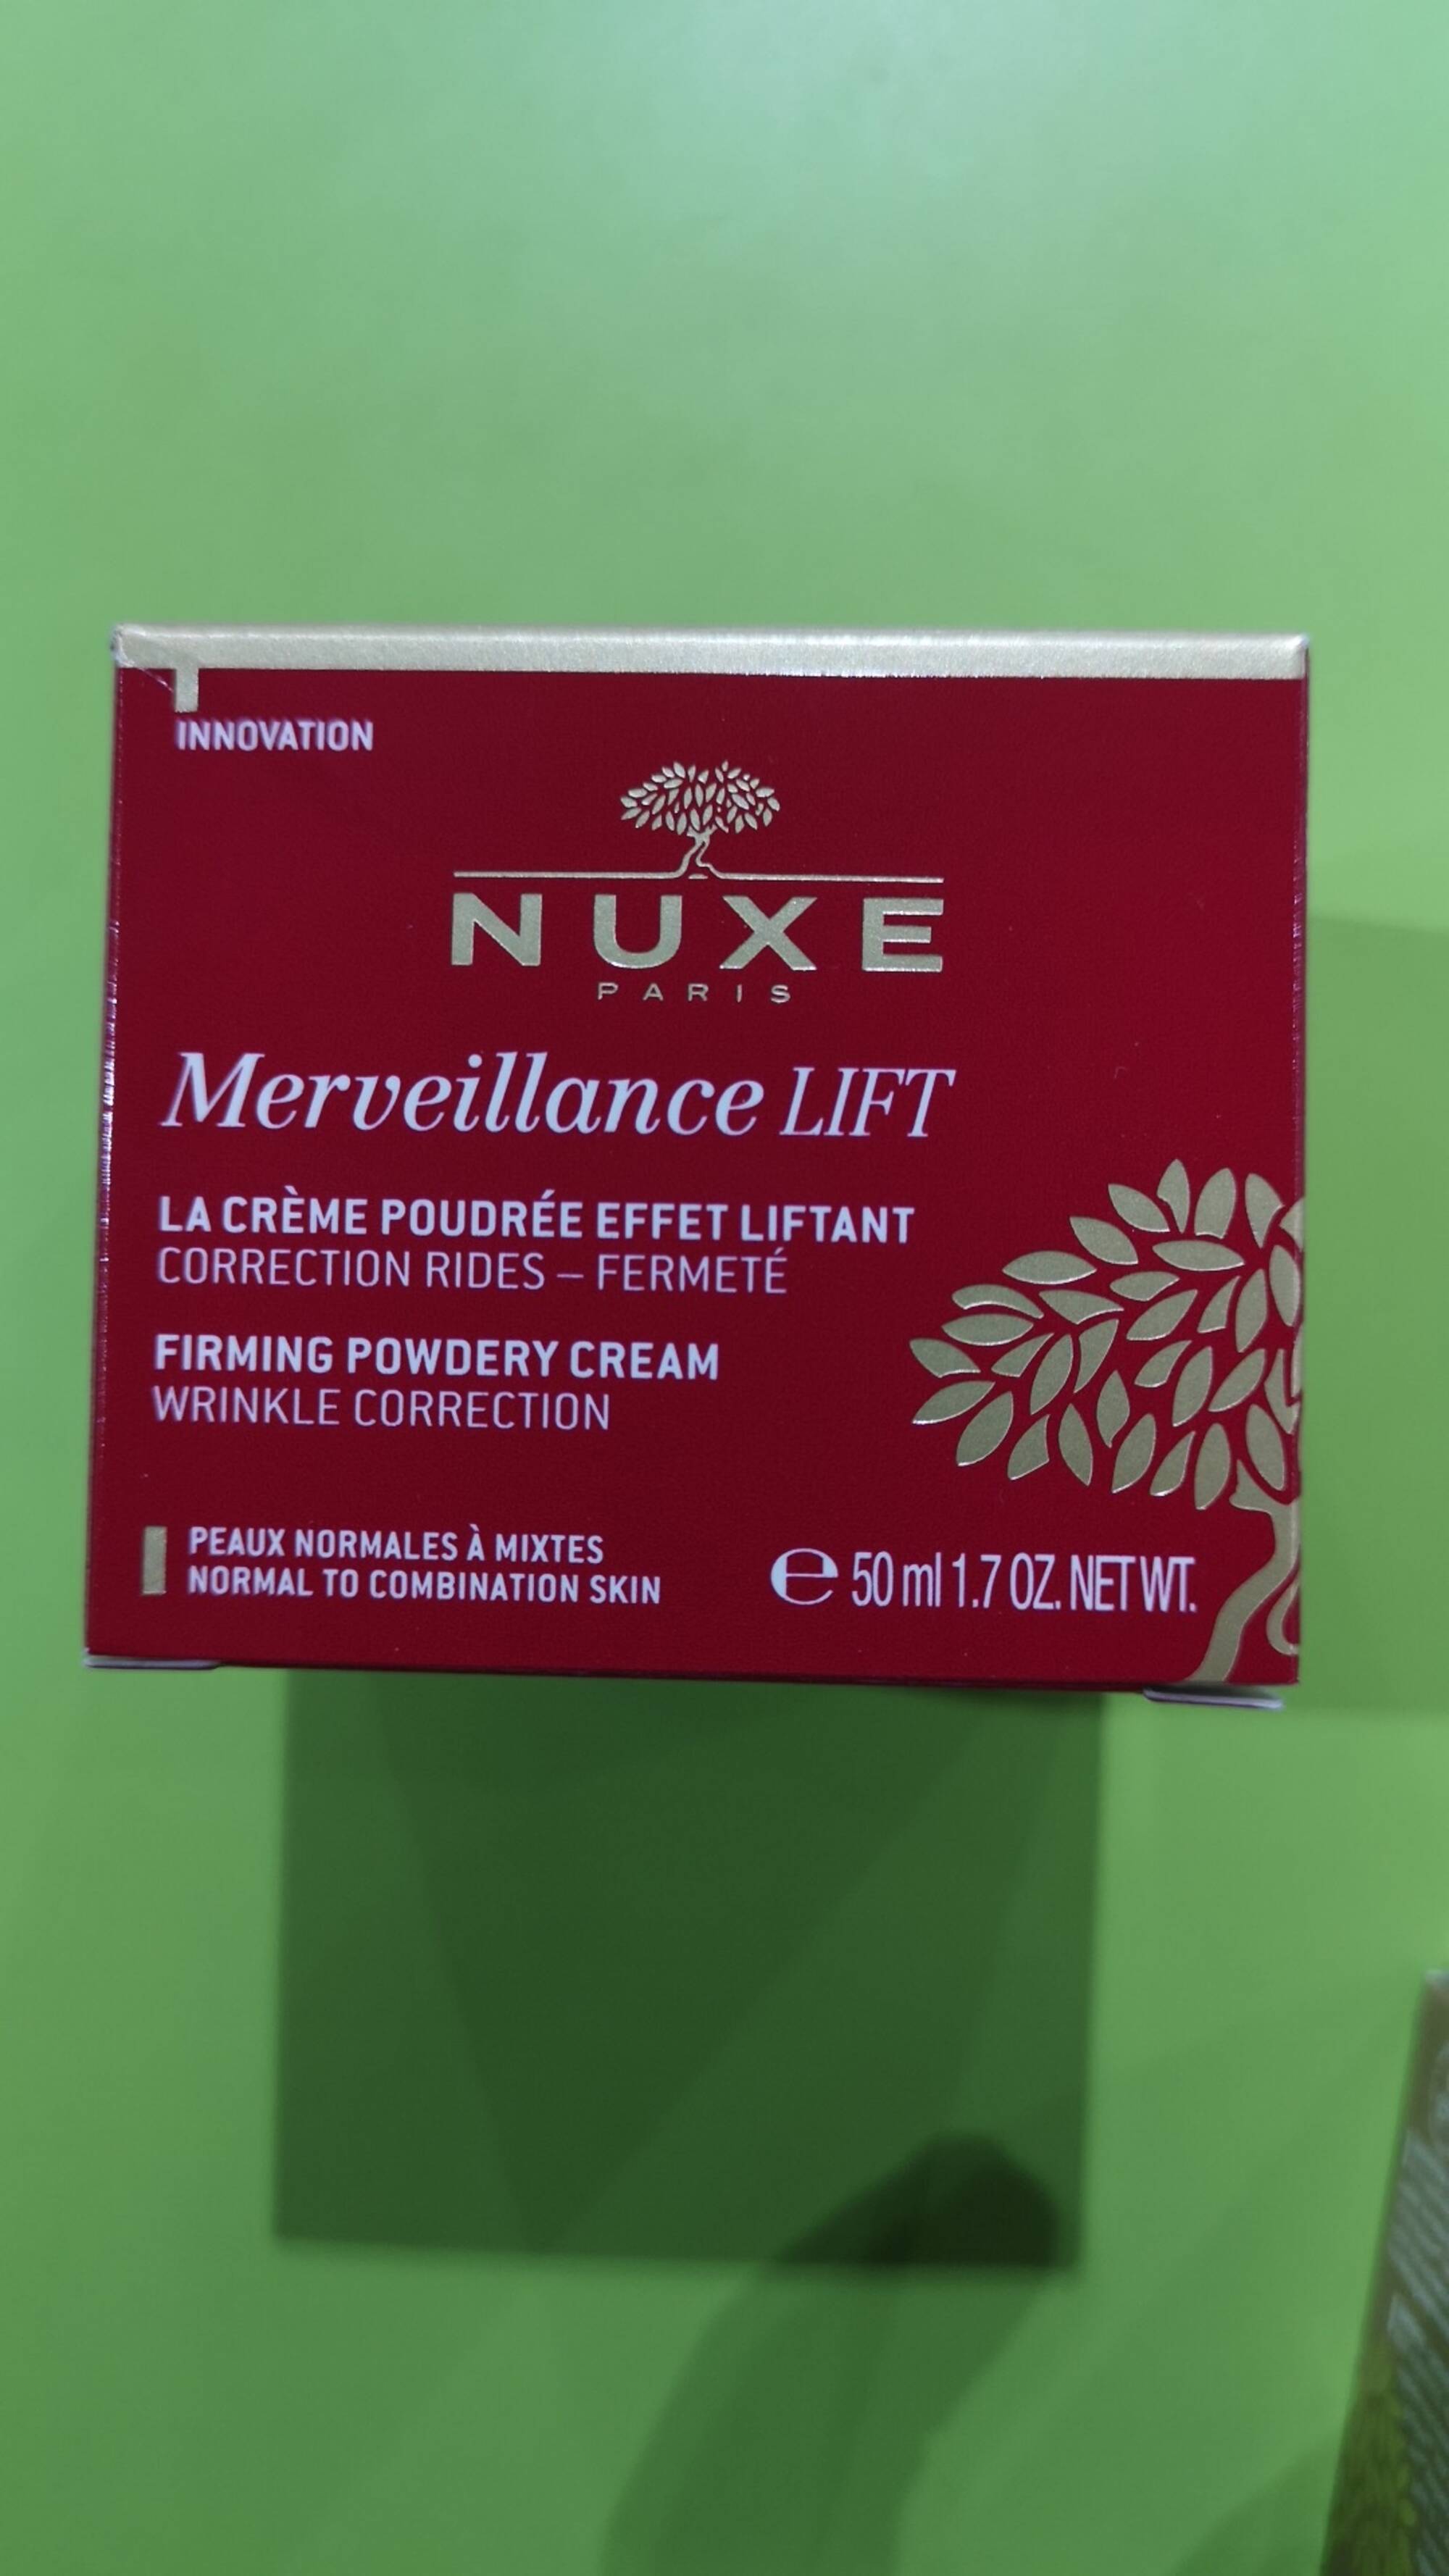 NUXE - Merveillance lift - La crème poudrée effet liftant